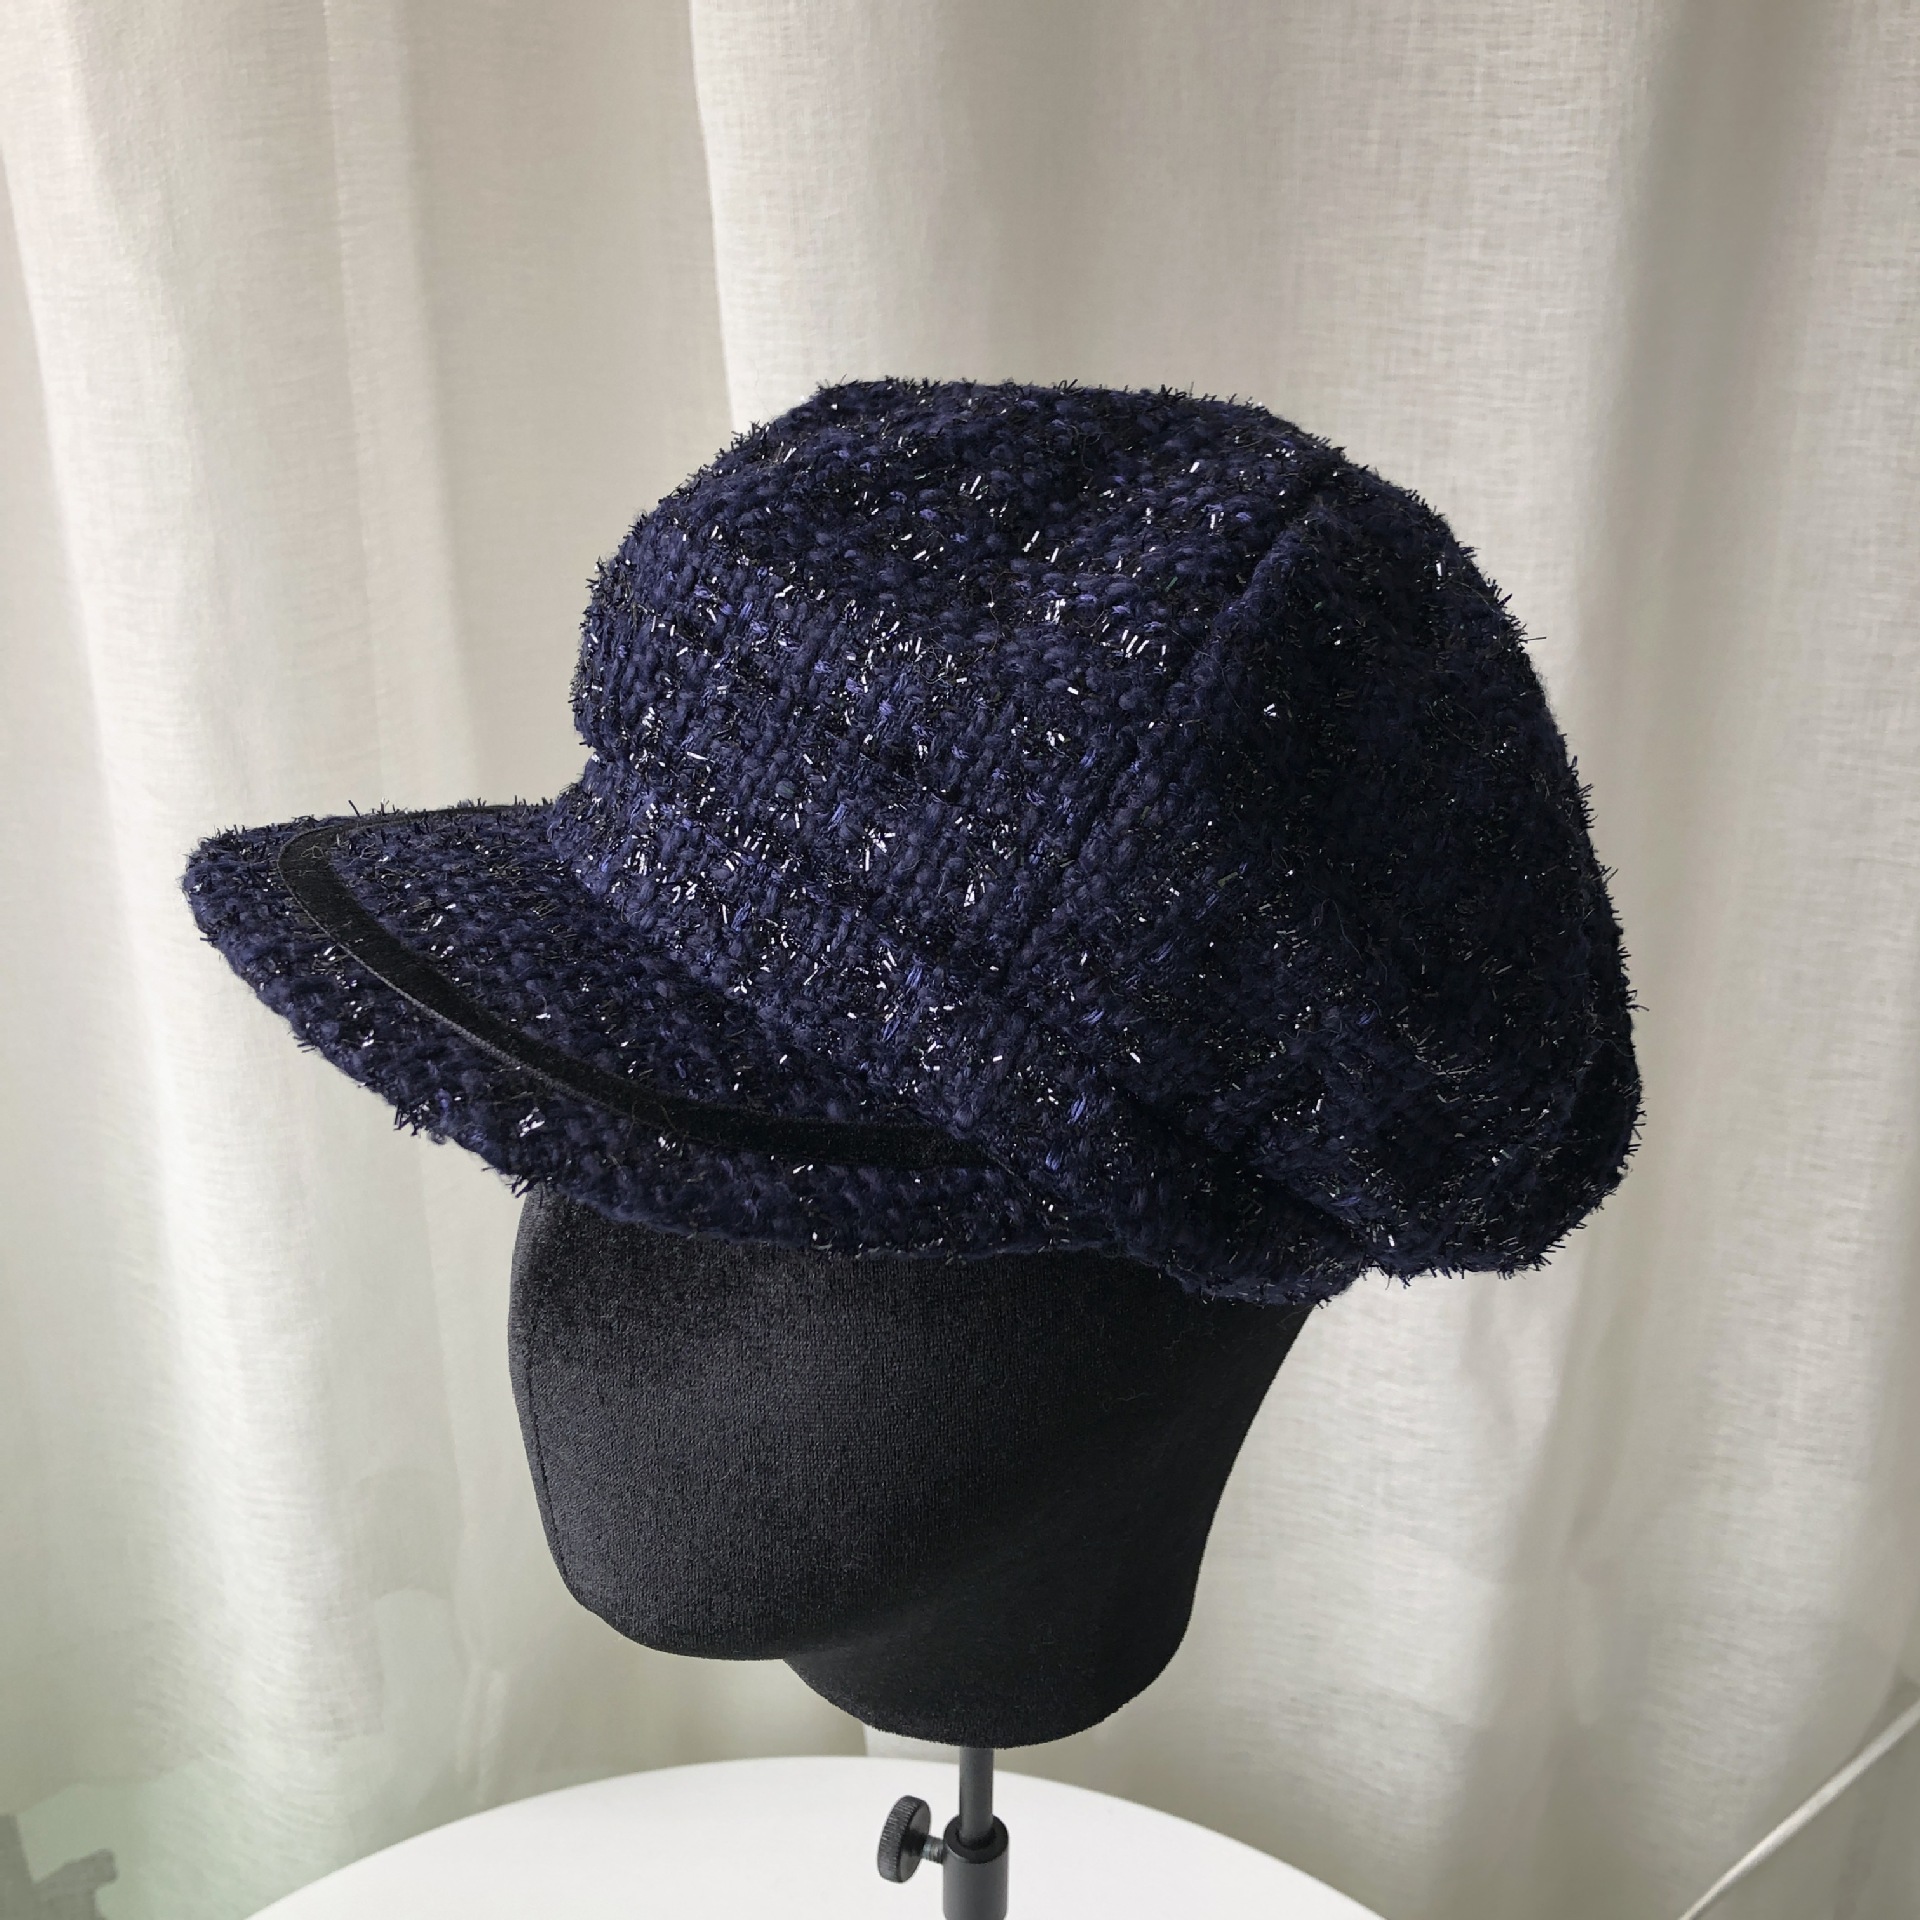 USPOP Neue frühling Kappen frauen Hand gemacht Tweed achteckige hüte weibliche achteckige kappe zeitungs kappen Hütte: Blau